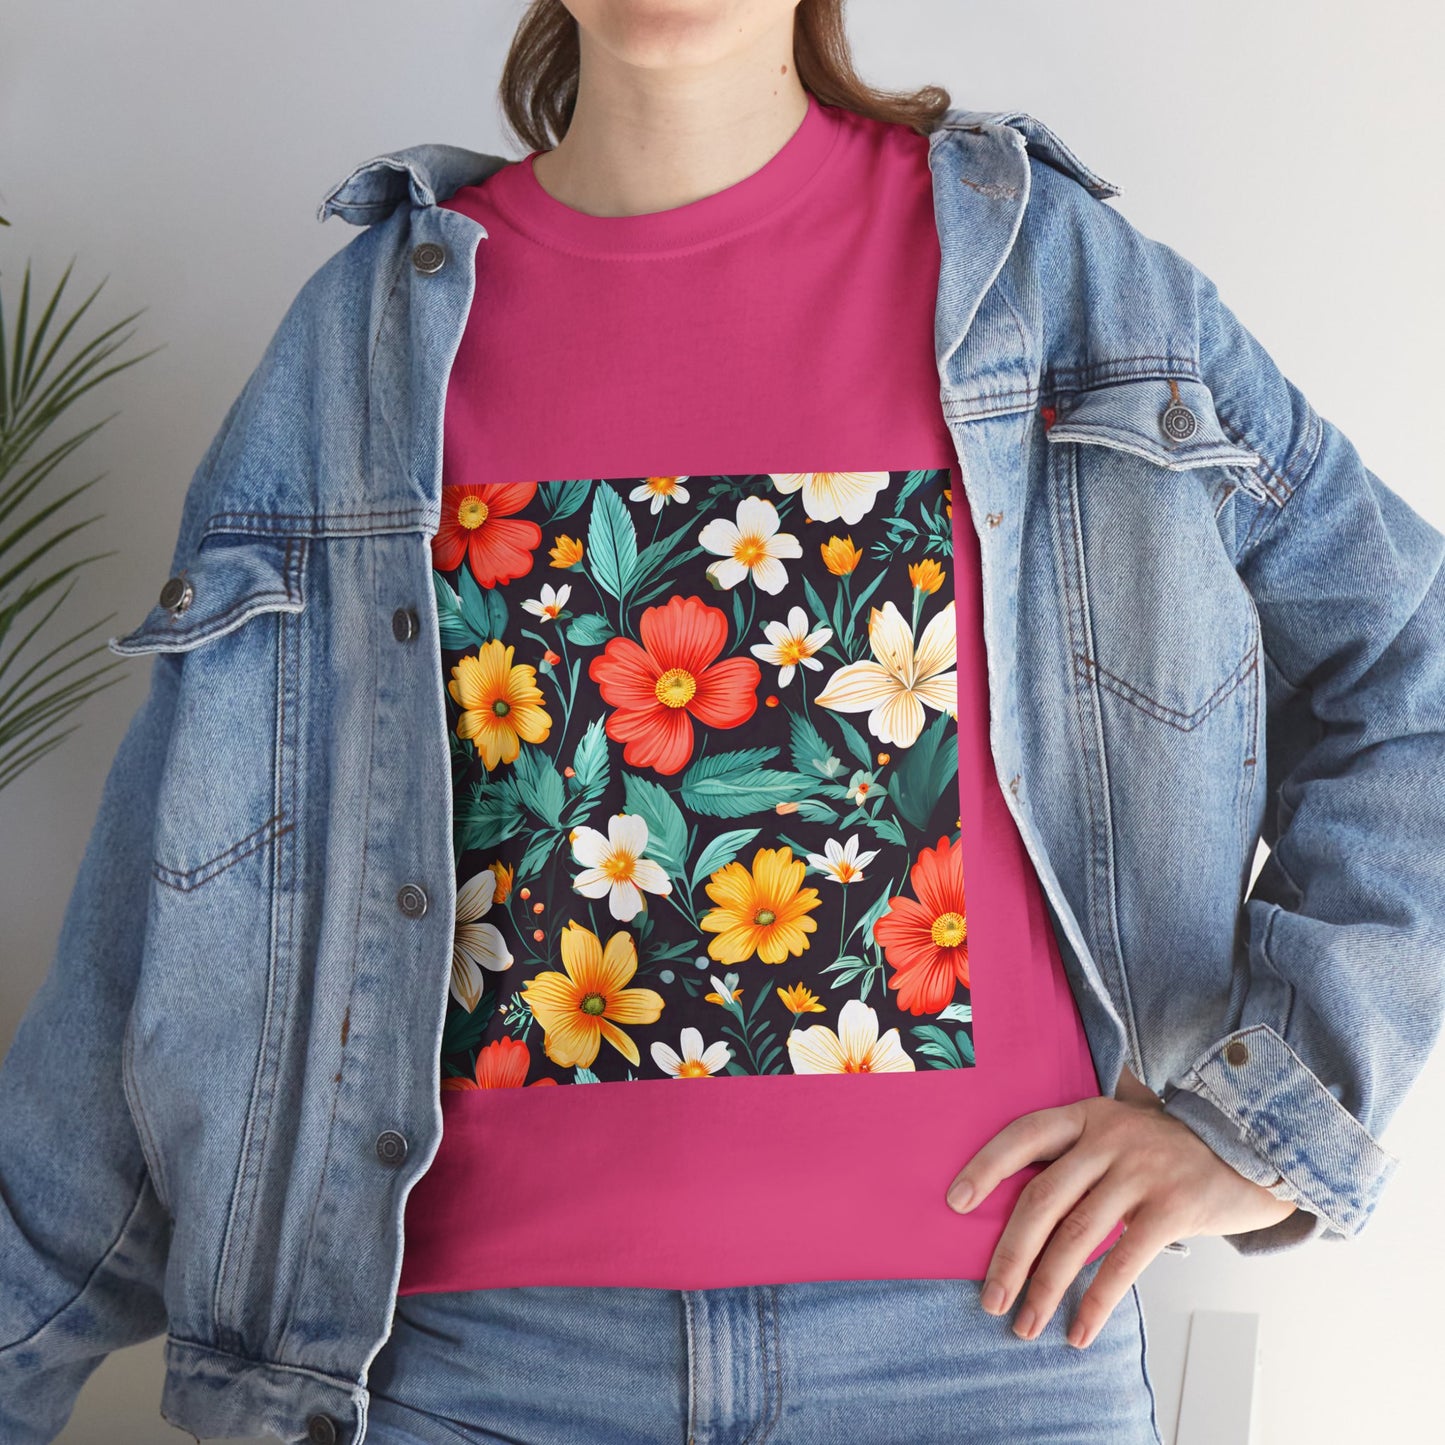 T-shirt - Blomster mønster 2